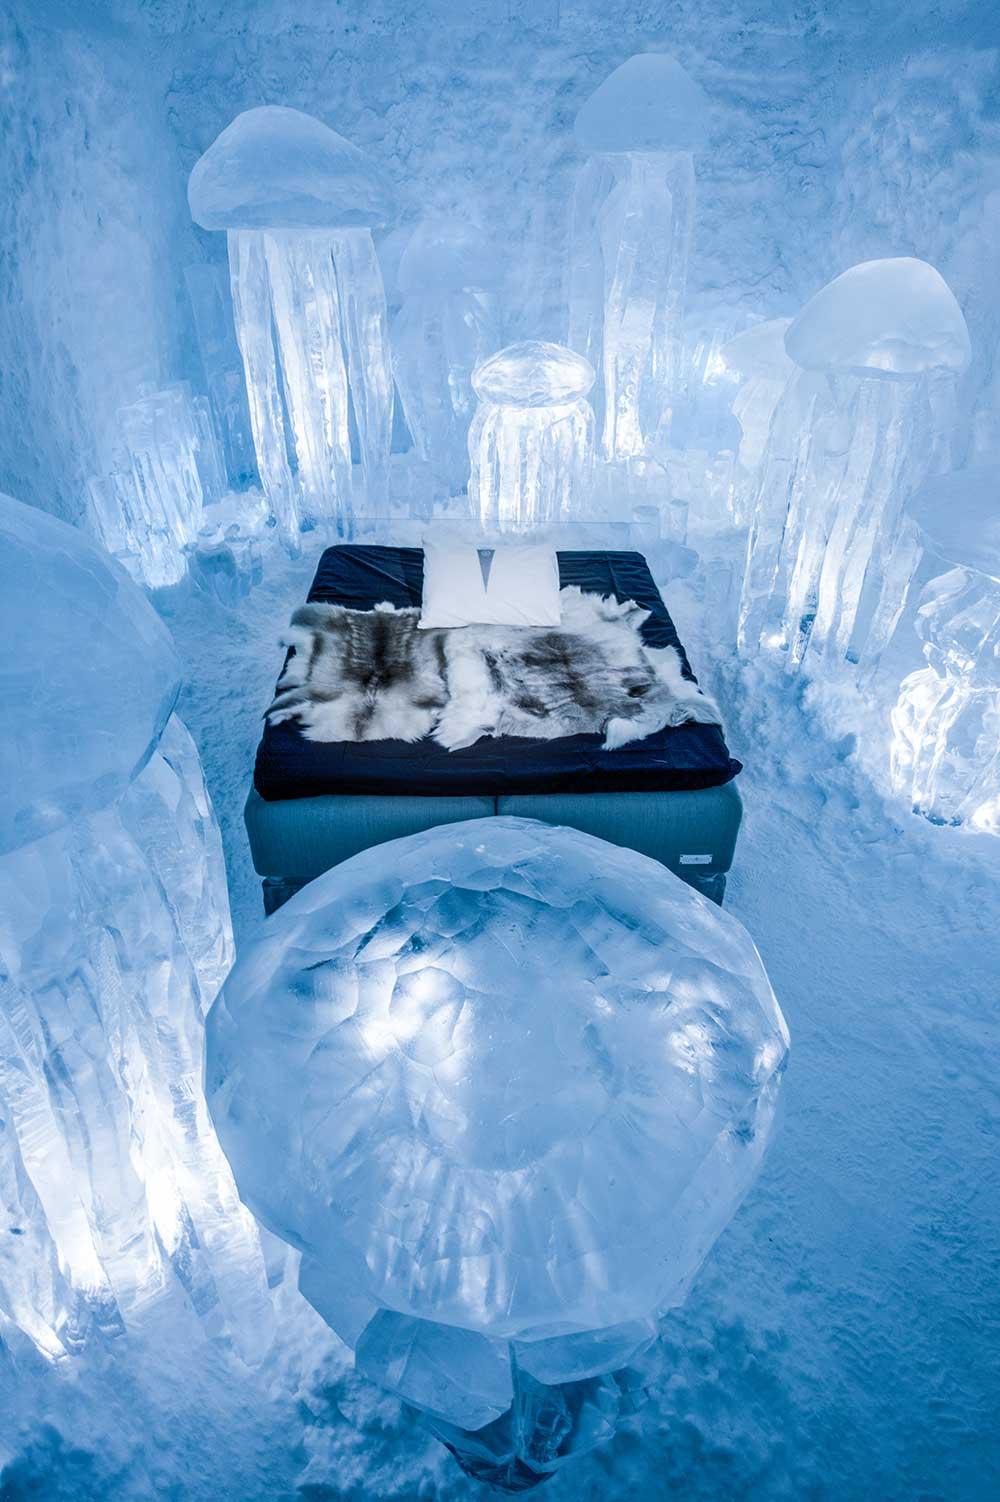 Lyxsvit på Icehotel. Konstverket heter ”Hydro smack” och är skapad av Lotta Lampa och Julia Gamborg.